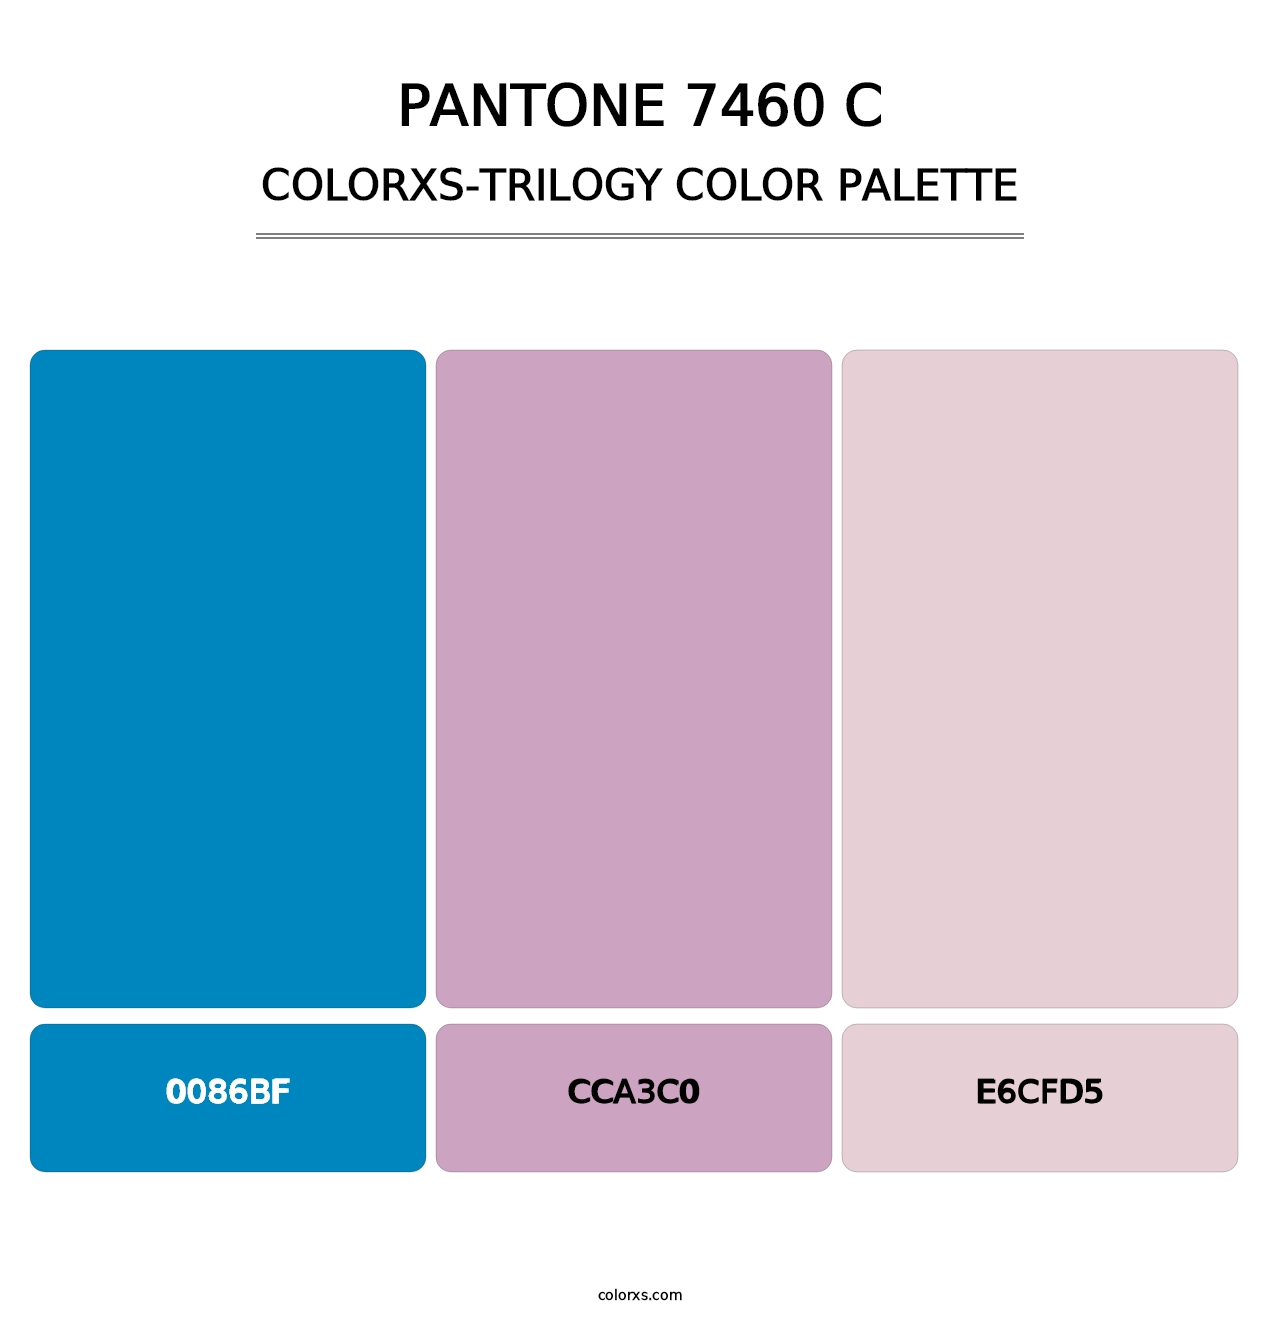 PANTONE 7460 C - Colorxs Trilogy Palette